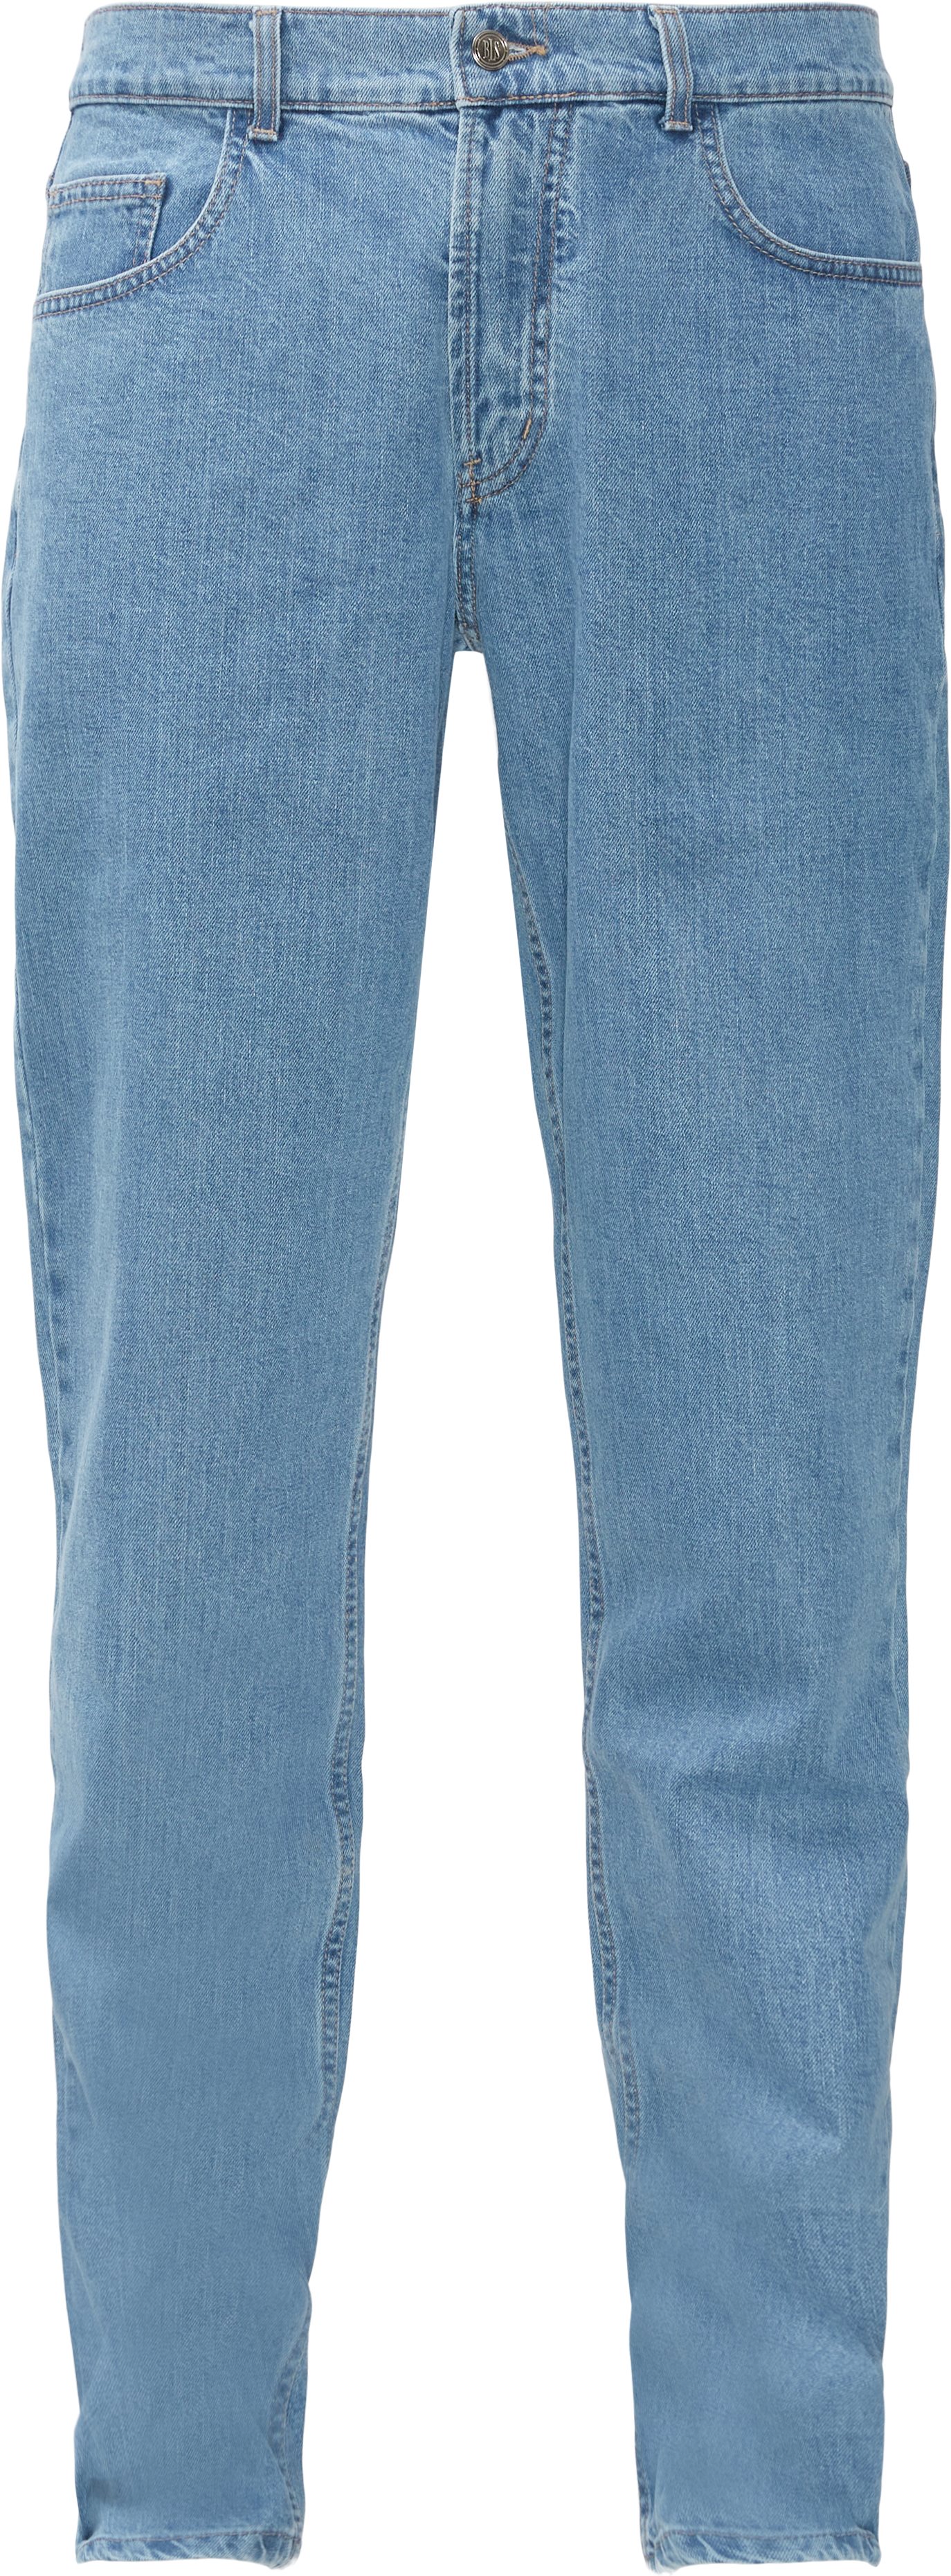 Jeans - Regular fit - Blue